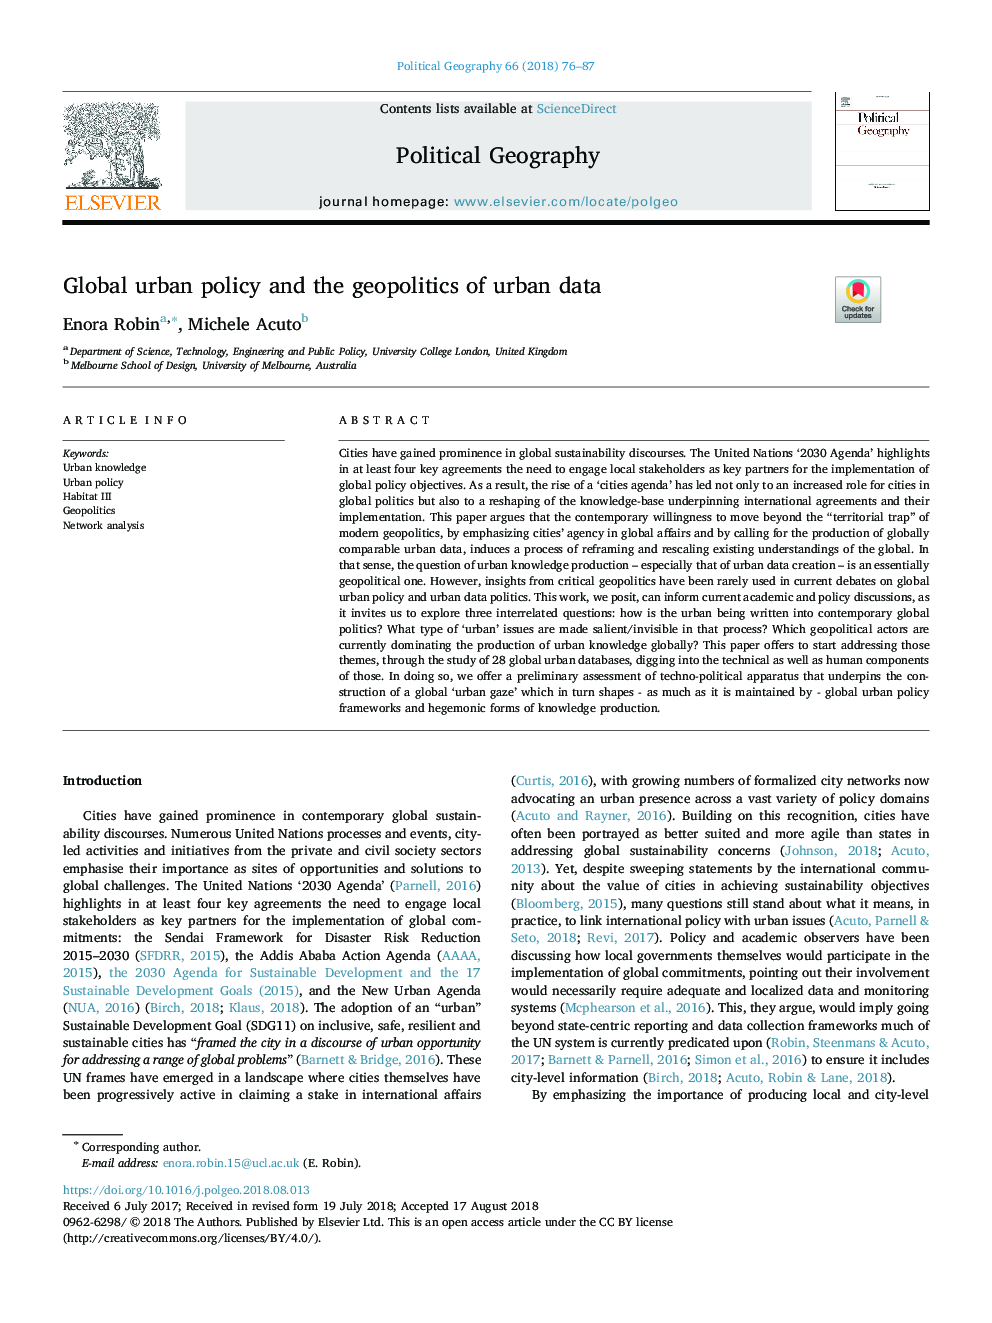 سیاست جهانی شهری و ژئوپولیتیک داده های شهری